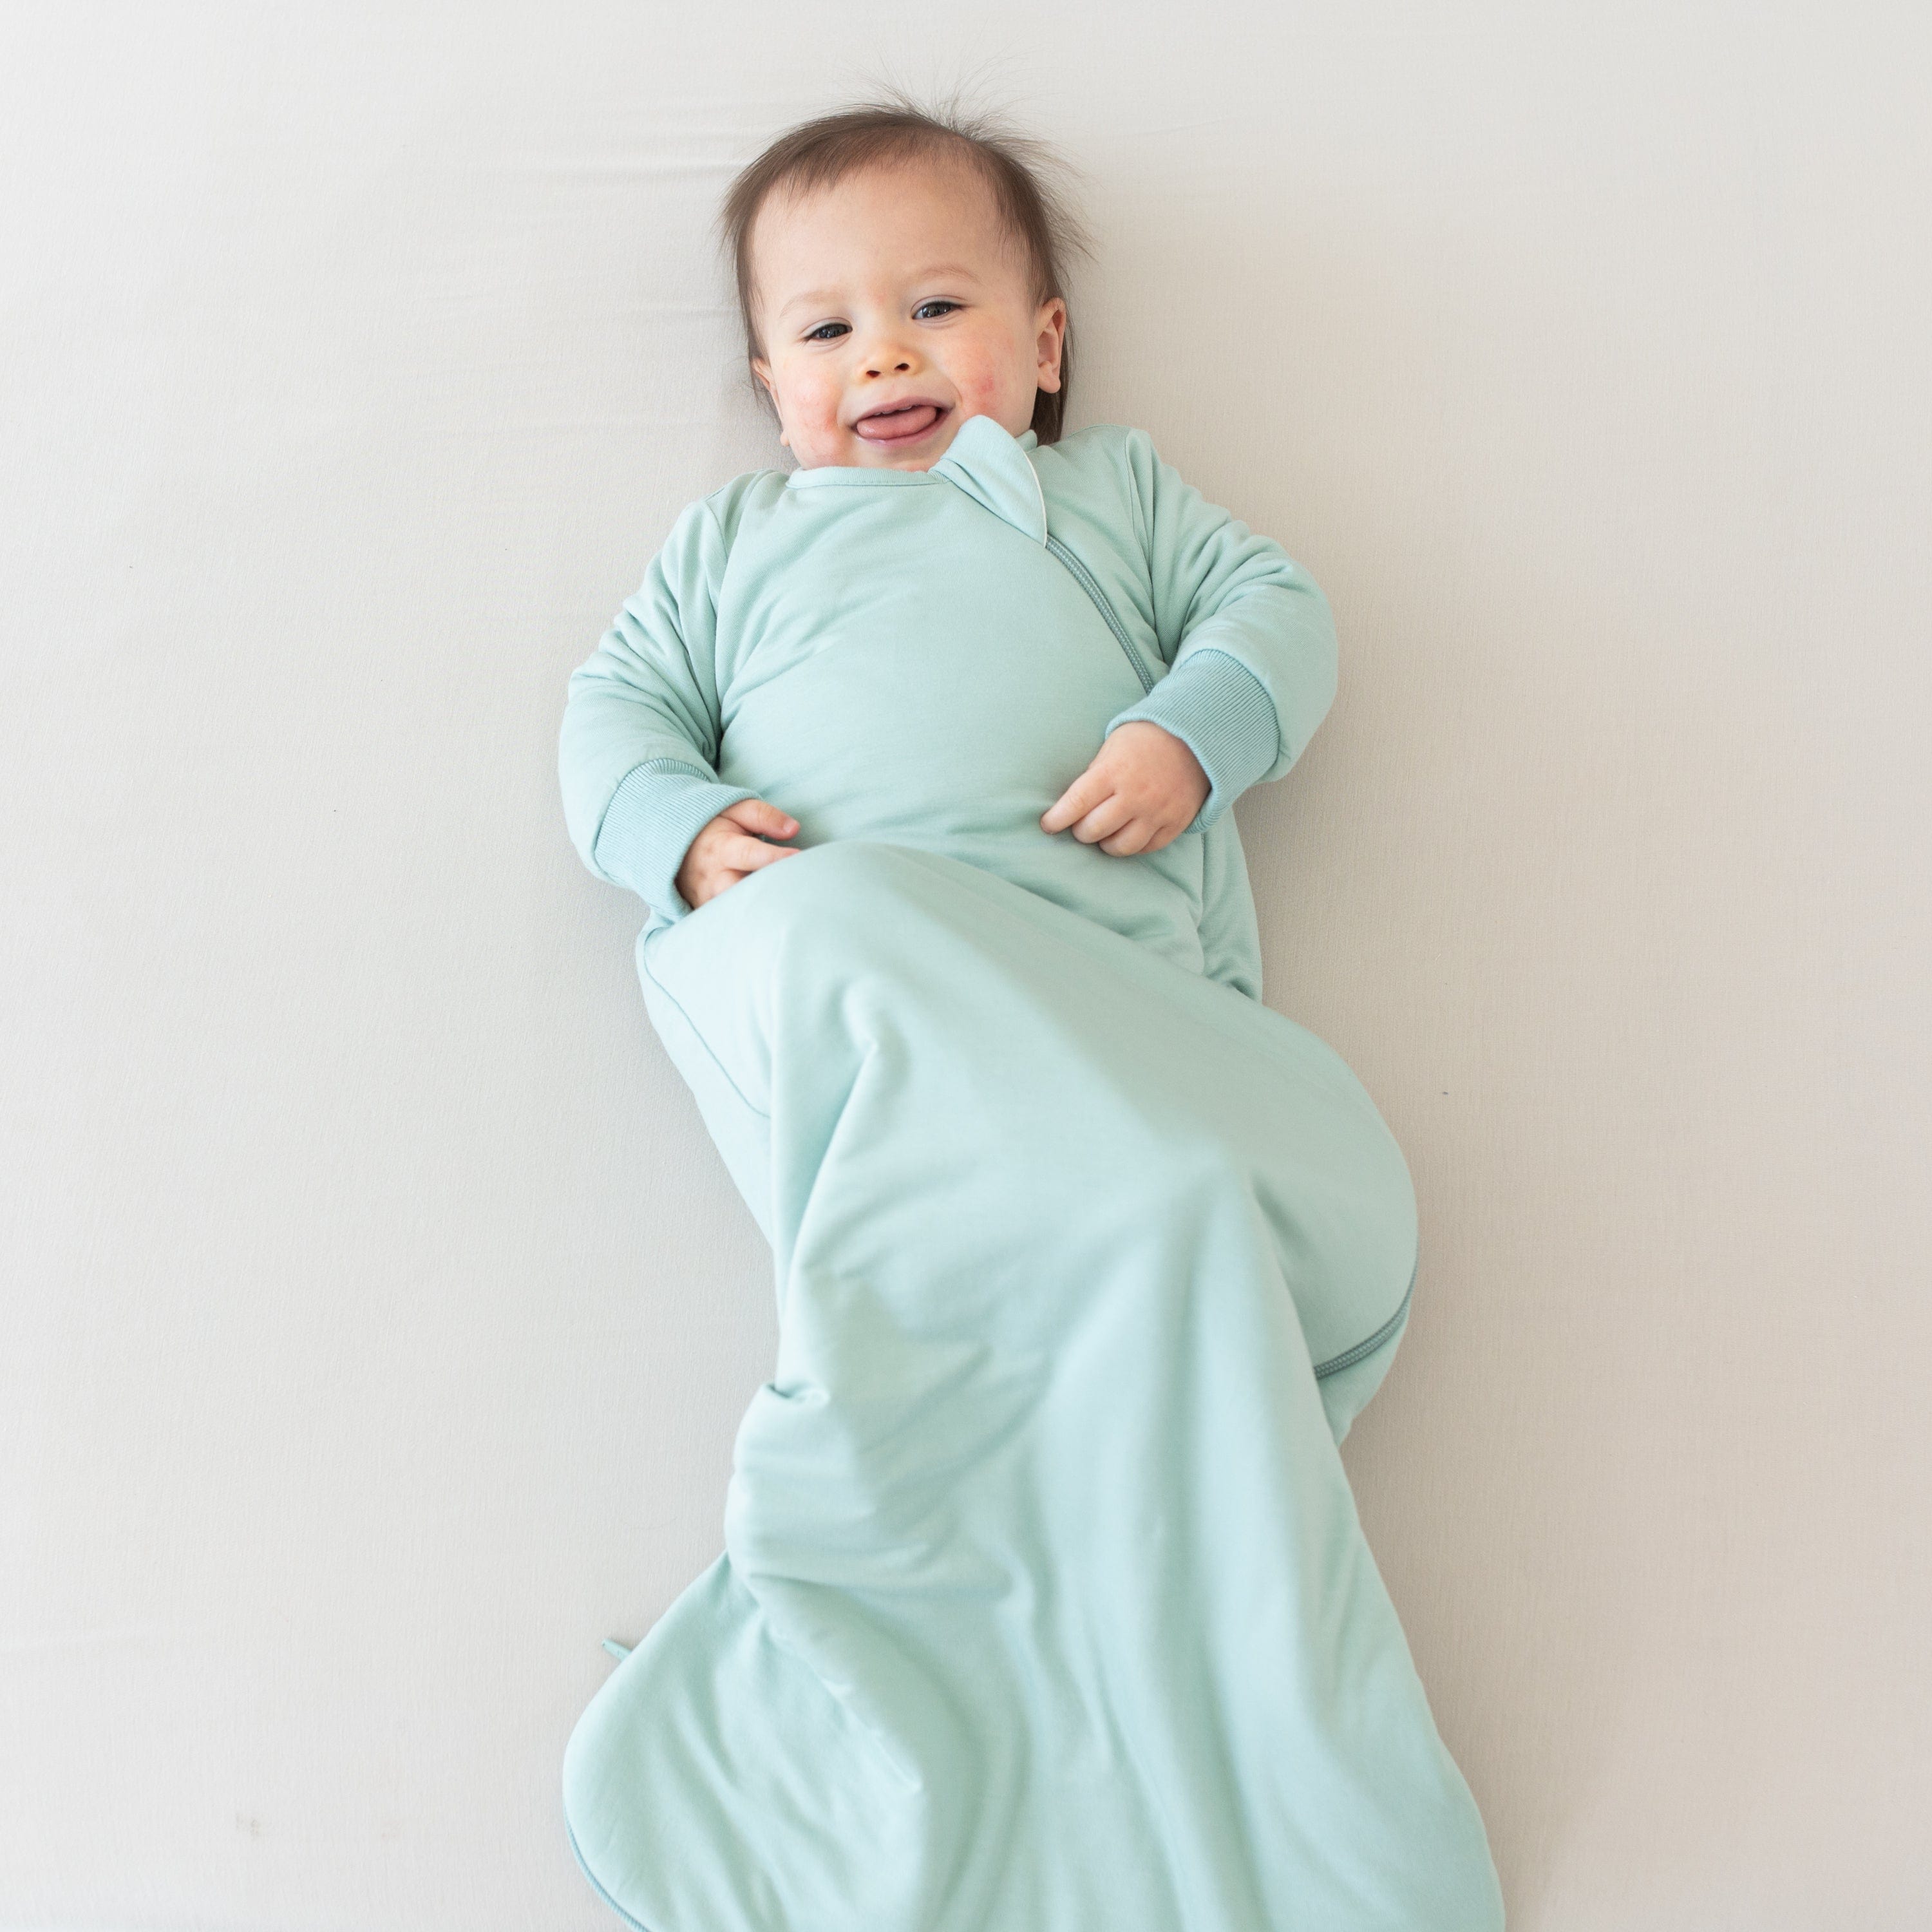 Baby in wearable blanket Kyte Baby Slumber Bag in Sage